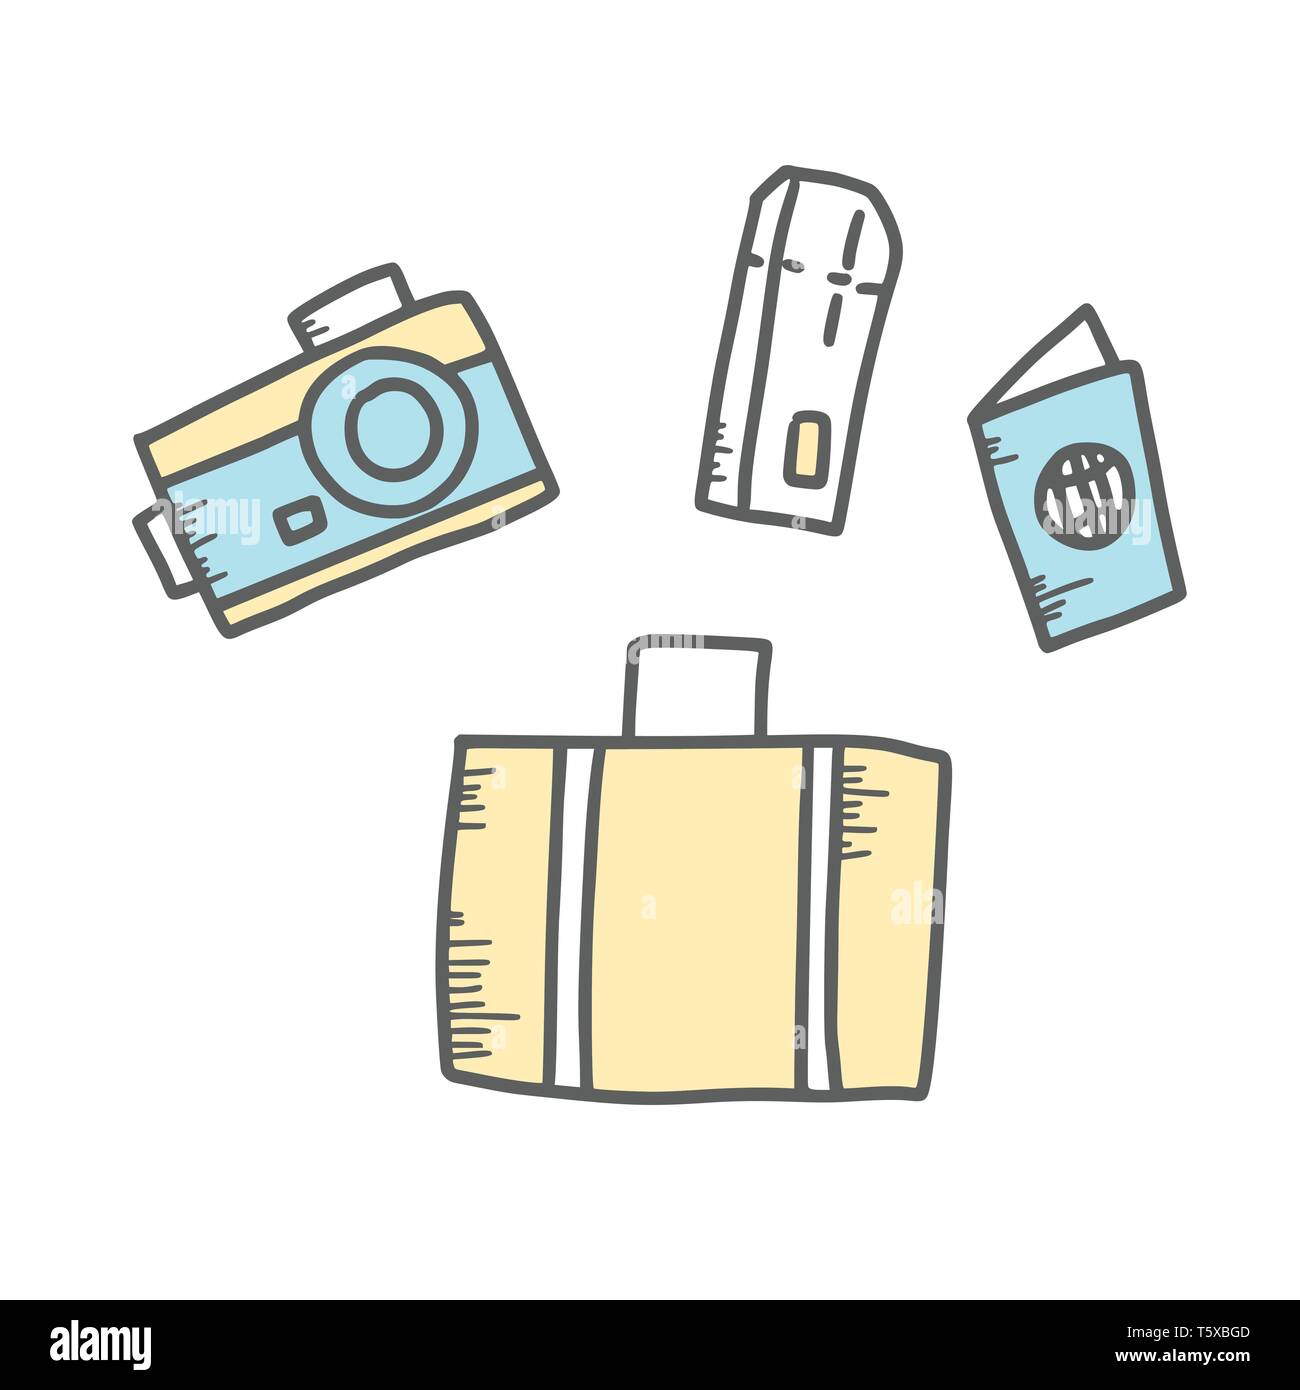 Fotocamera, valigia, passaporto e imbarco-card. Set di simboli di viaggio in stile scarabocchio. Disegnato a mano viaggio di vettore di elementi isolati su sfondo bianco. Co Illustrazione Vettoriale